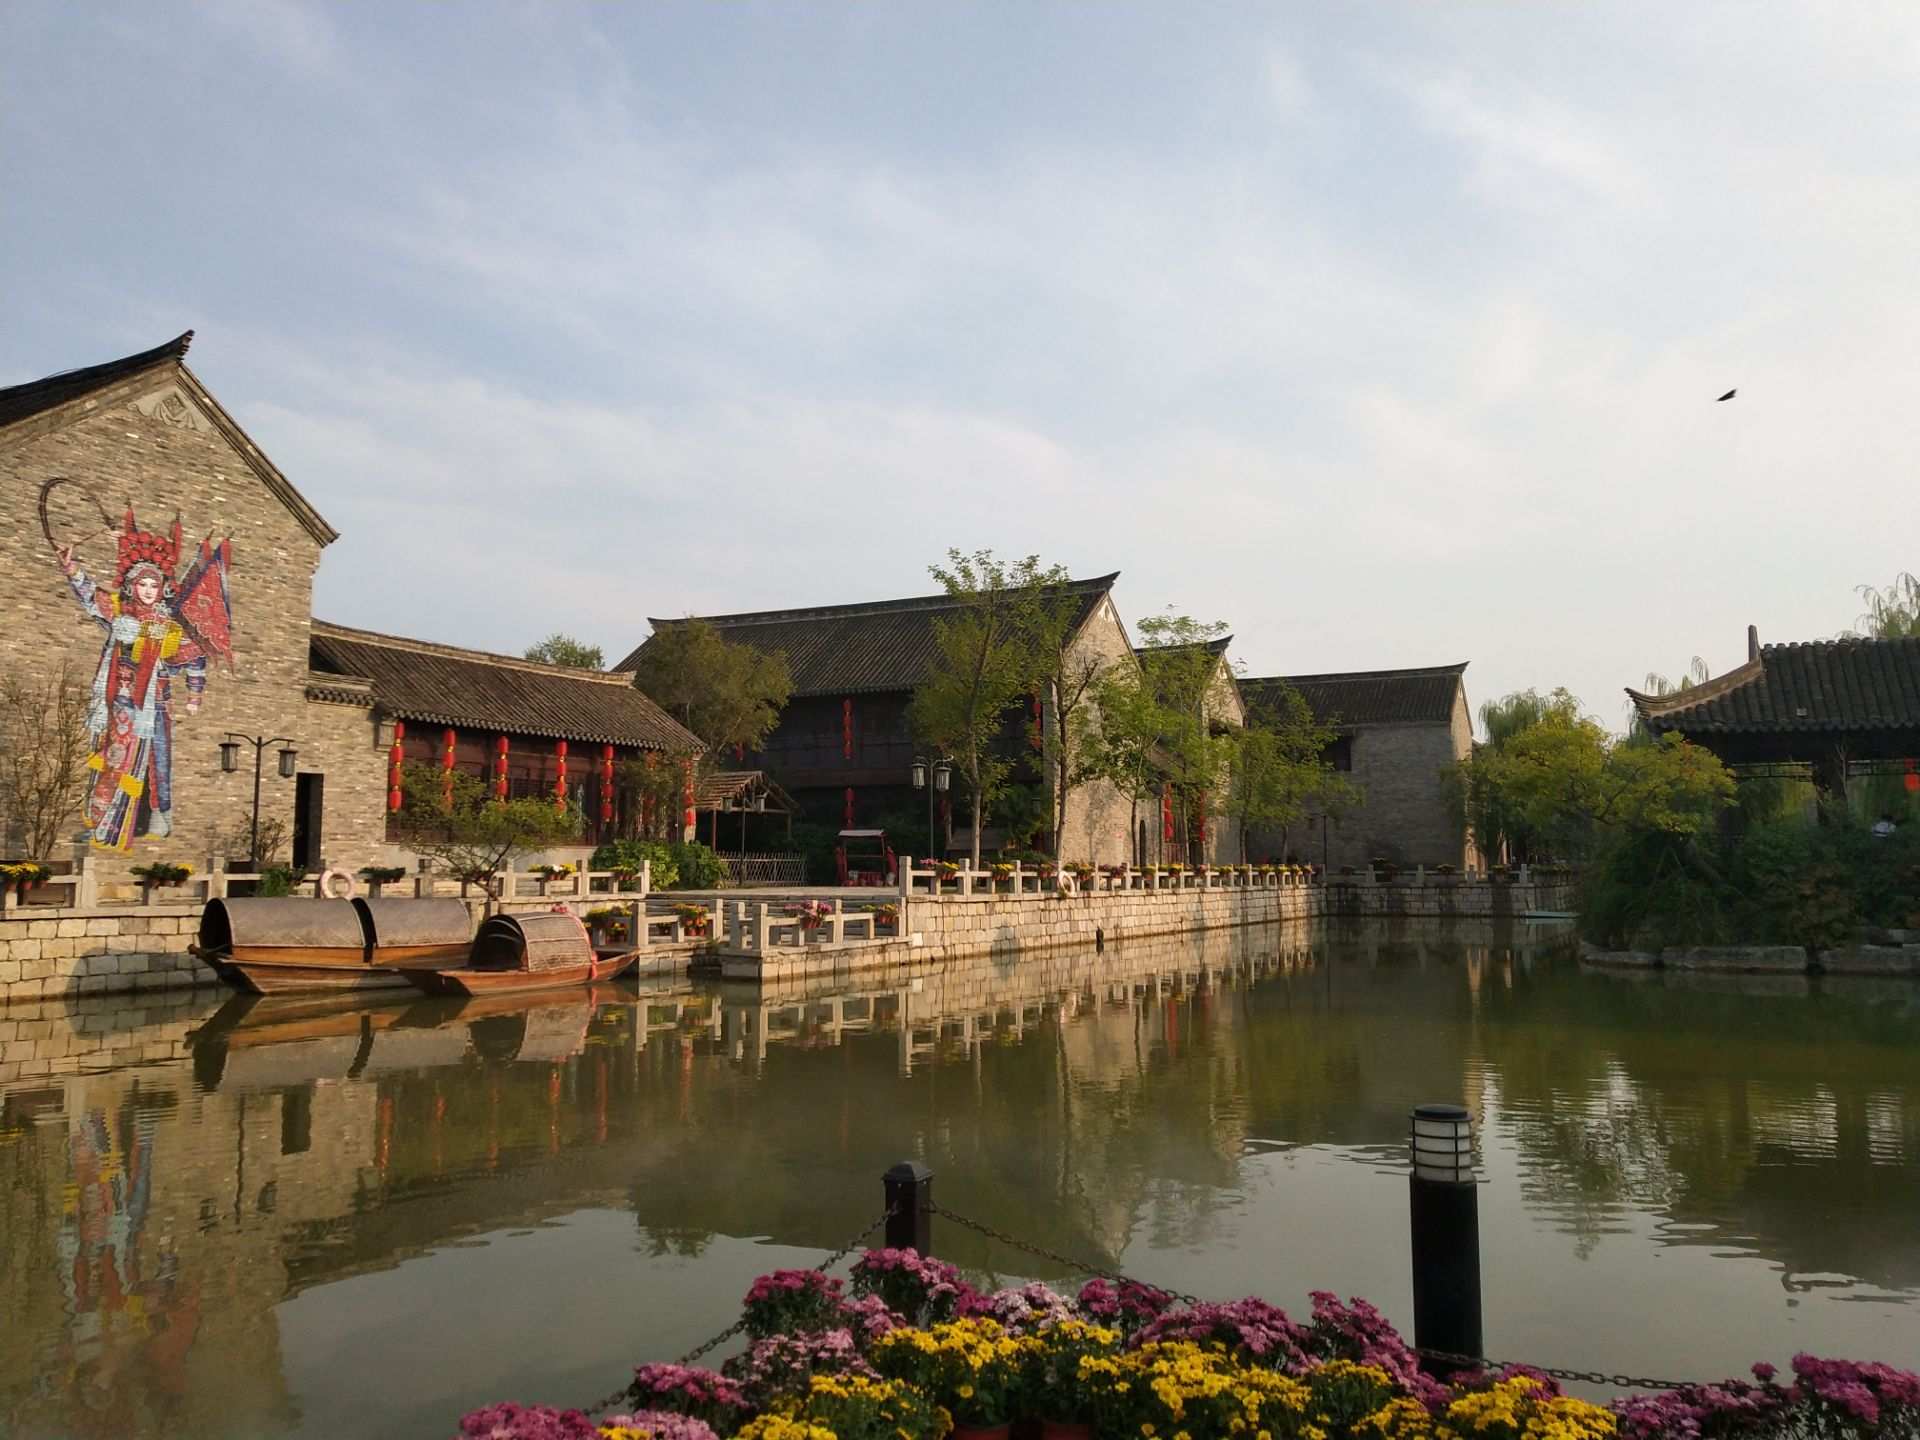 【携程攻略】徐州潘安水镇景点,很有名族风情的地方,不大但还不错.